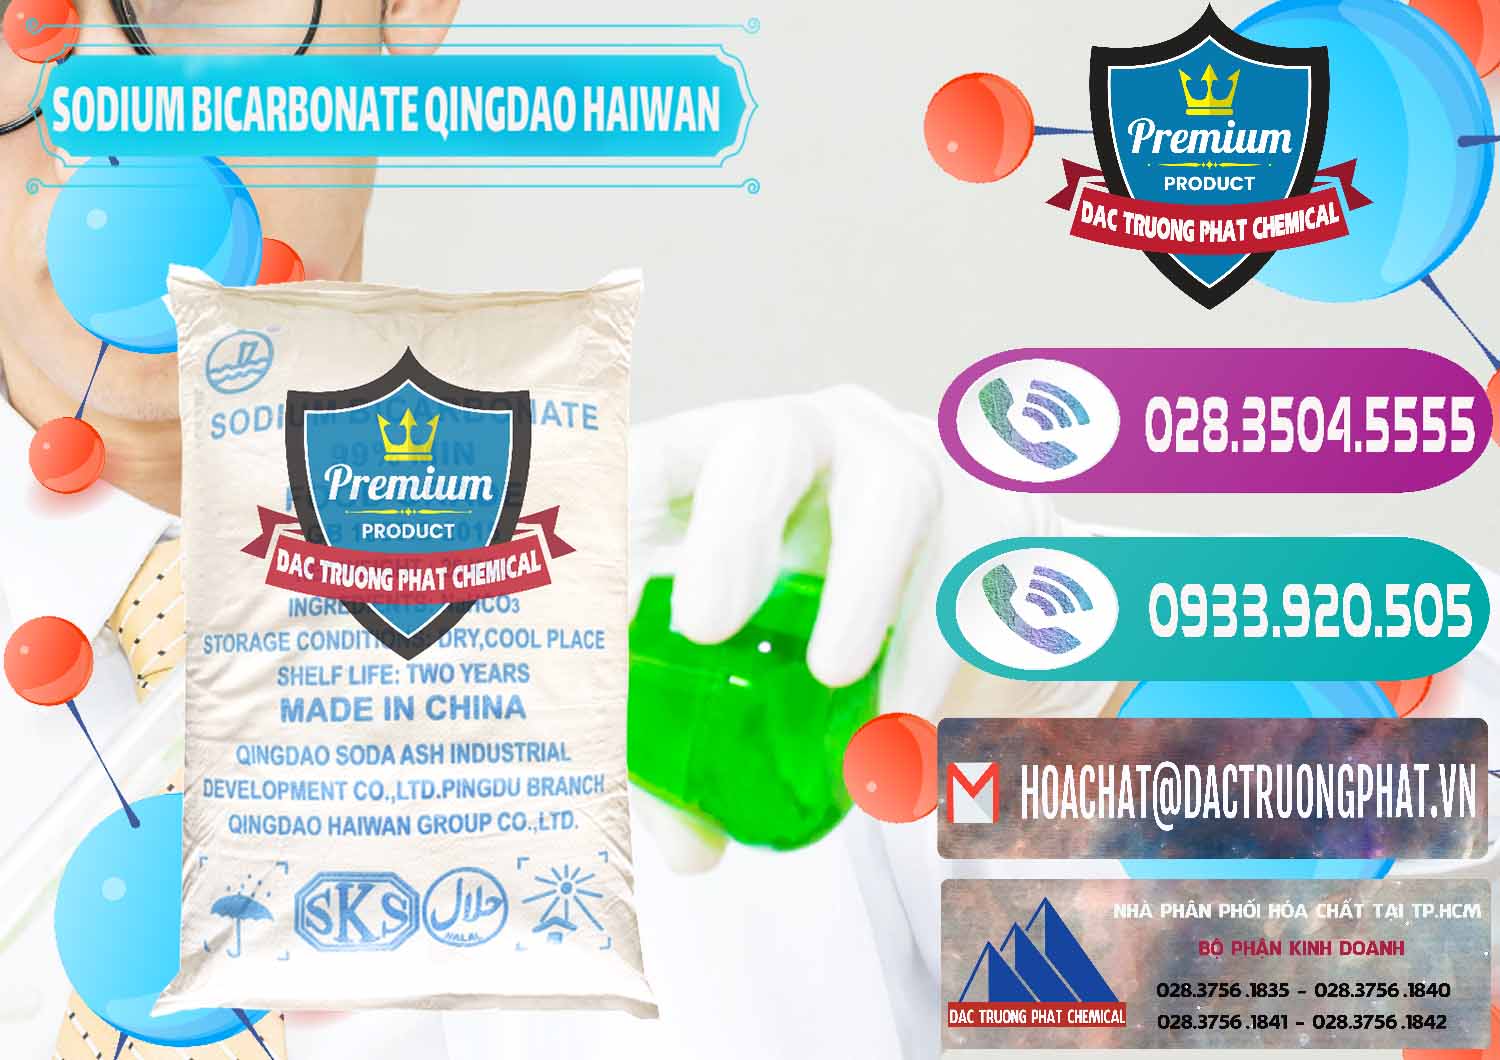 Nơi chuyên bán ( phân phối ) Sodium Bicarbonate – Bicar NaHCO3 Food Grade Qingdao Haiwan Trung Quốc China - 0258 - Nơi cung ứng và phân phối hóa chất tại TP.HCM - hoachatxulynuoc.com